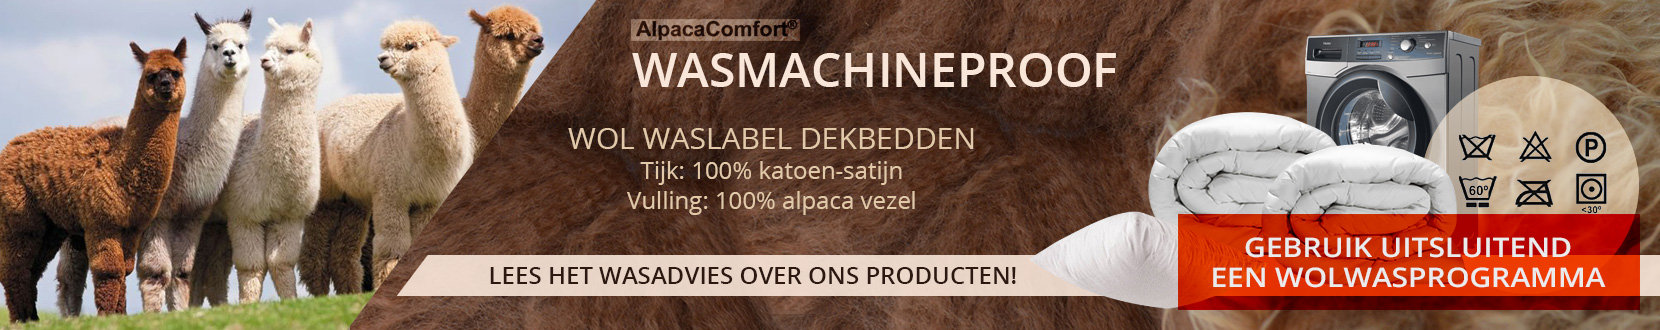 alpaca dekbedden wasmachine